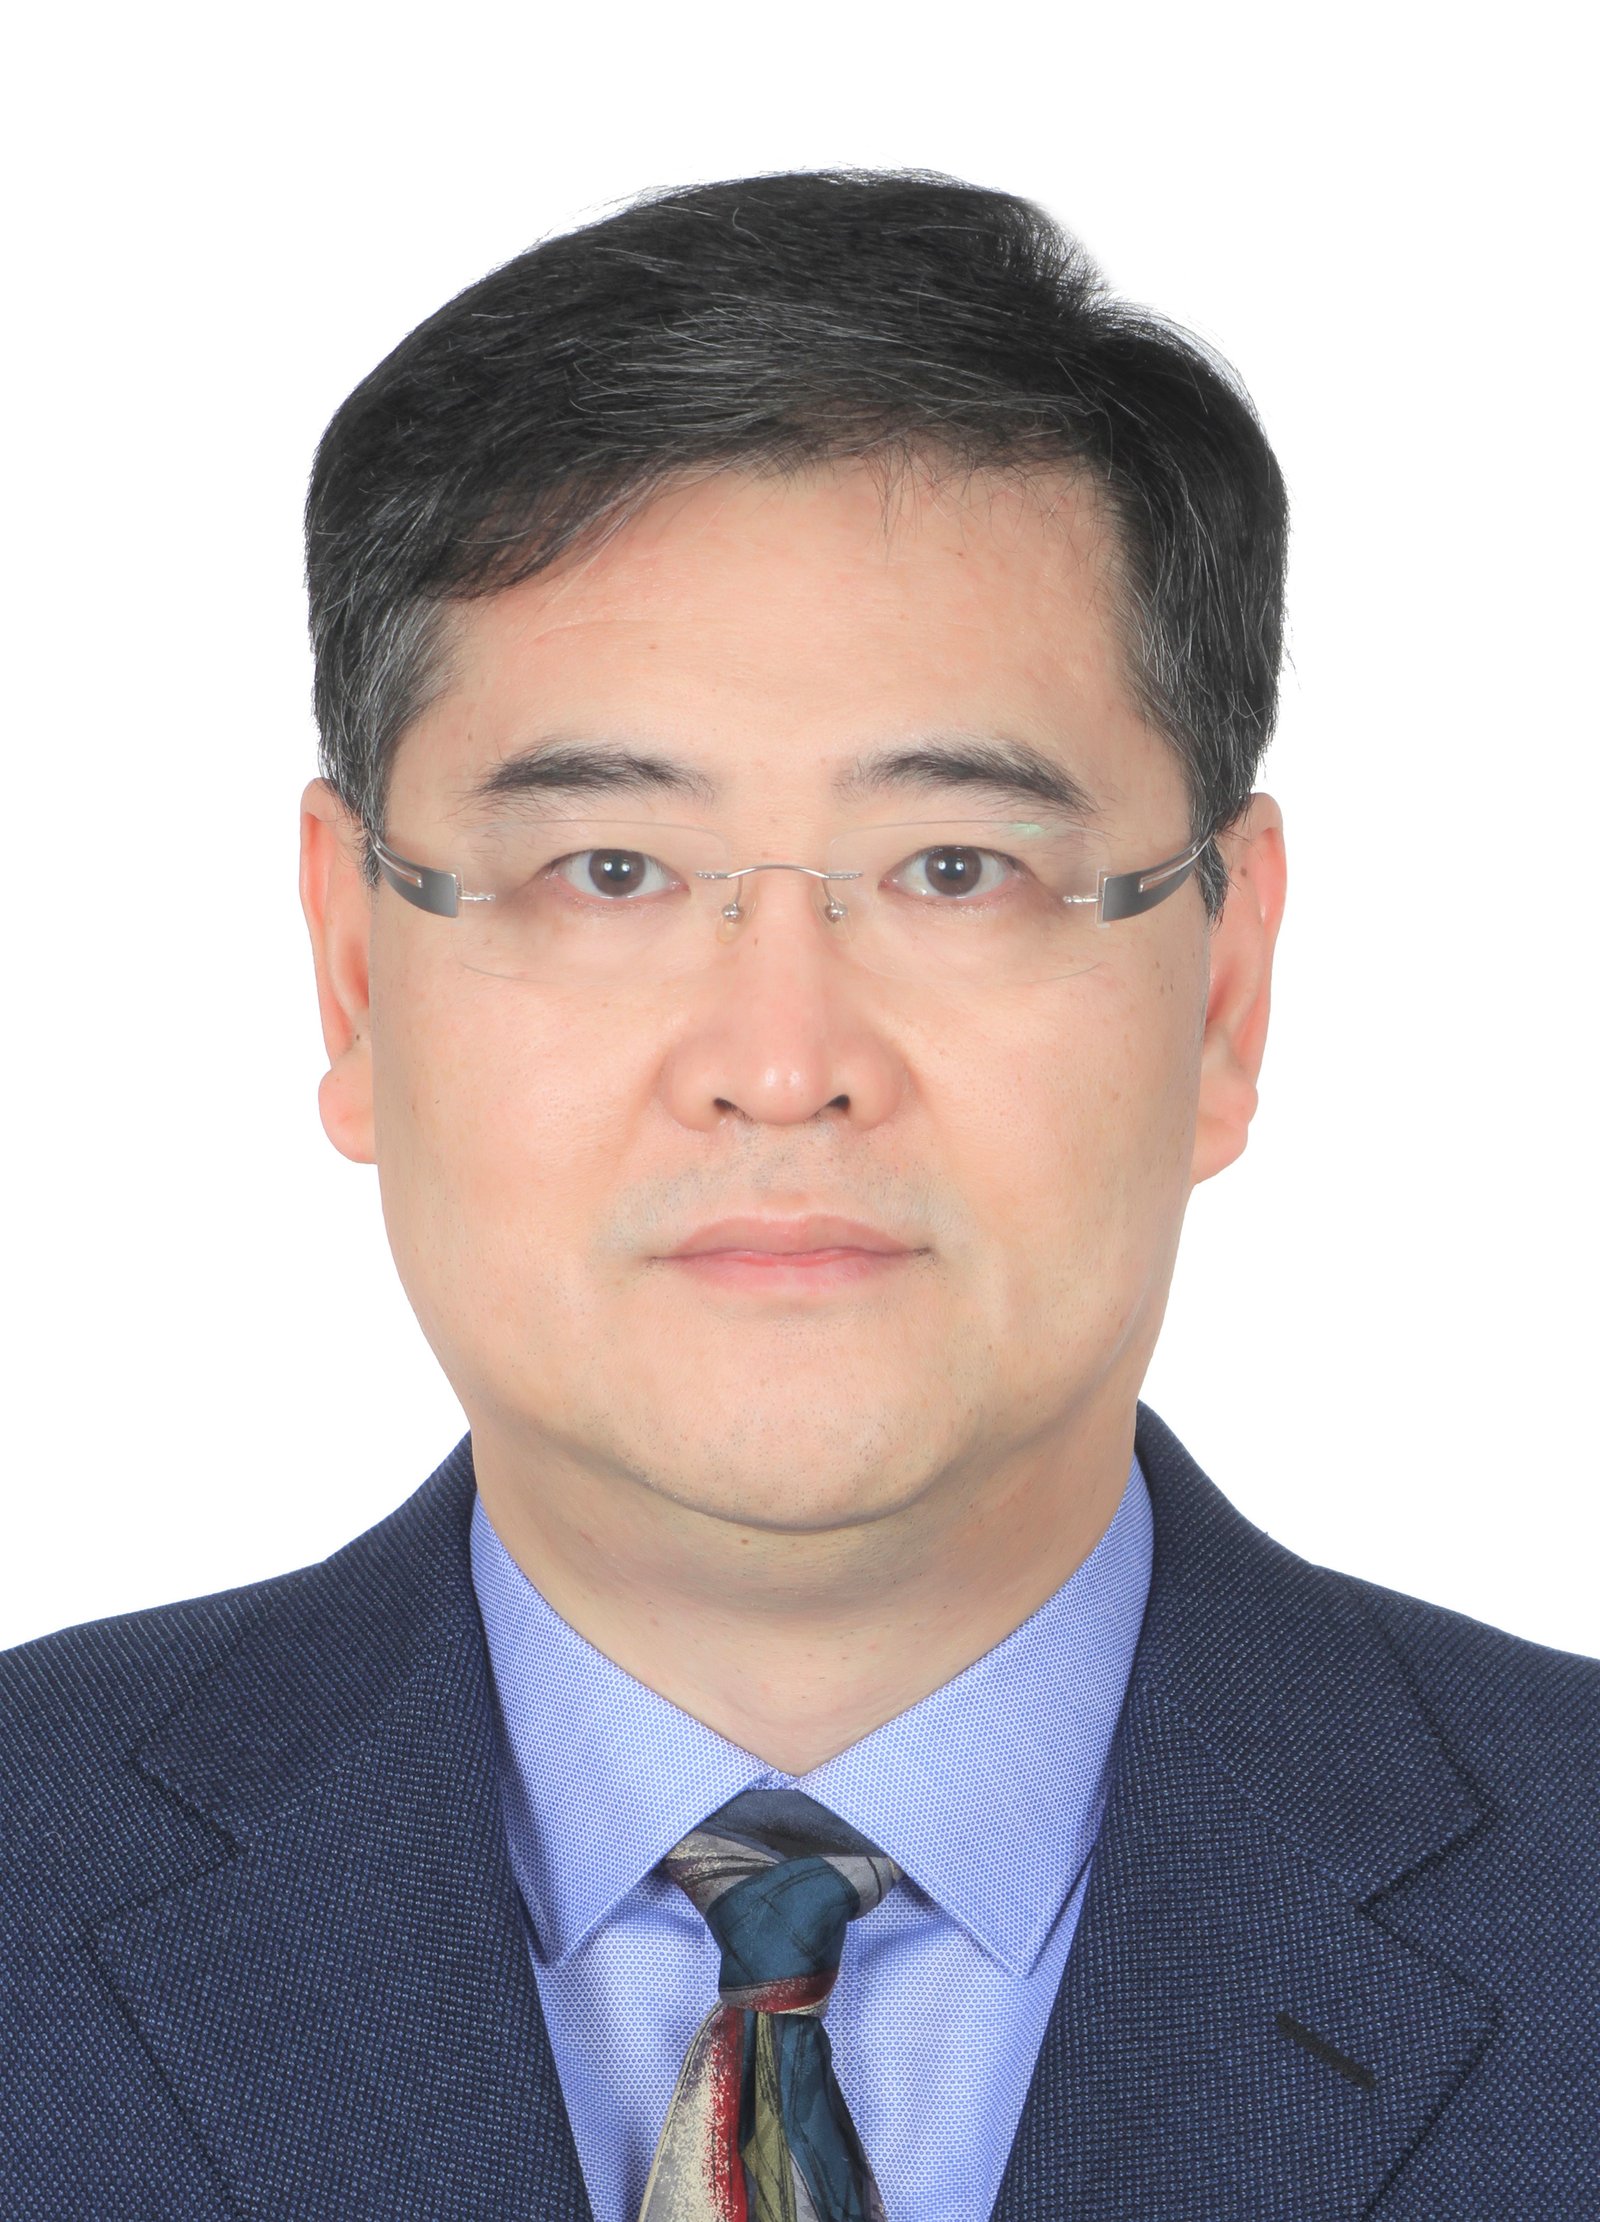 Prof. Hong He